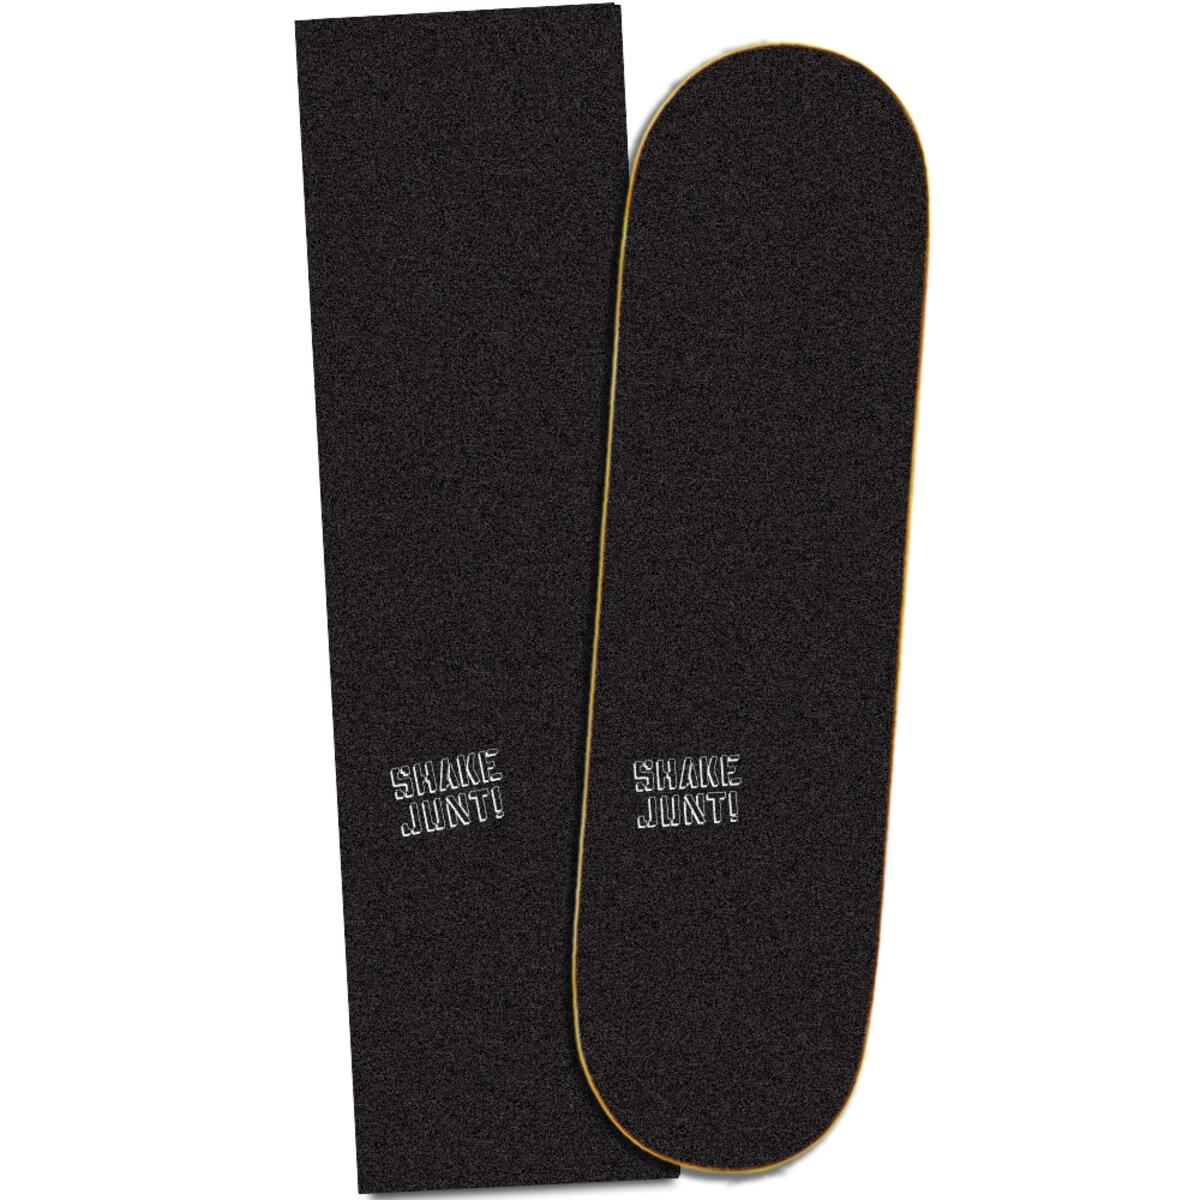 Heel boos Bridge pier Korst 9" X 33" SHAKE JUNT Skateboard Grip Tape- Low Key, BLK / WHT - Deckadence  Board Shoppe